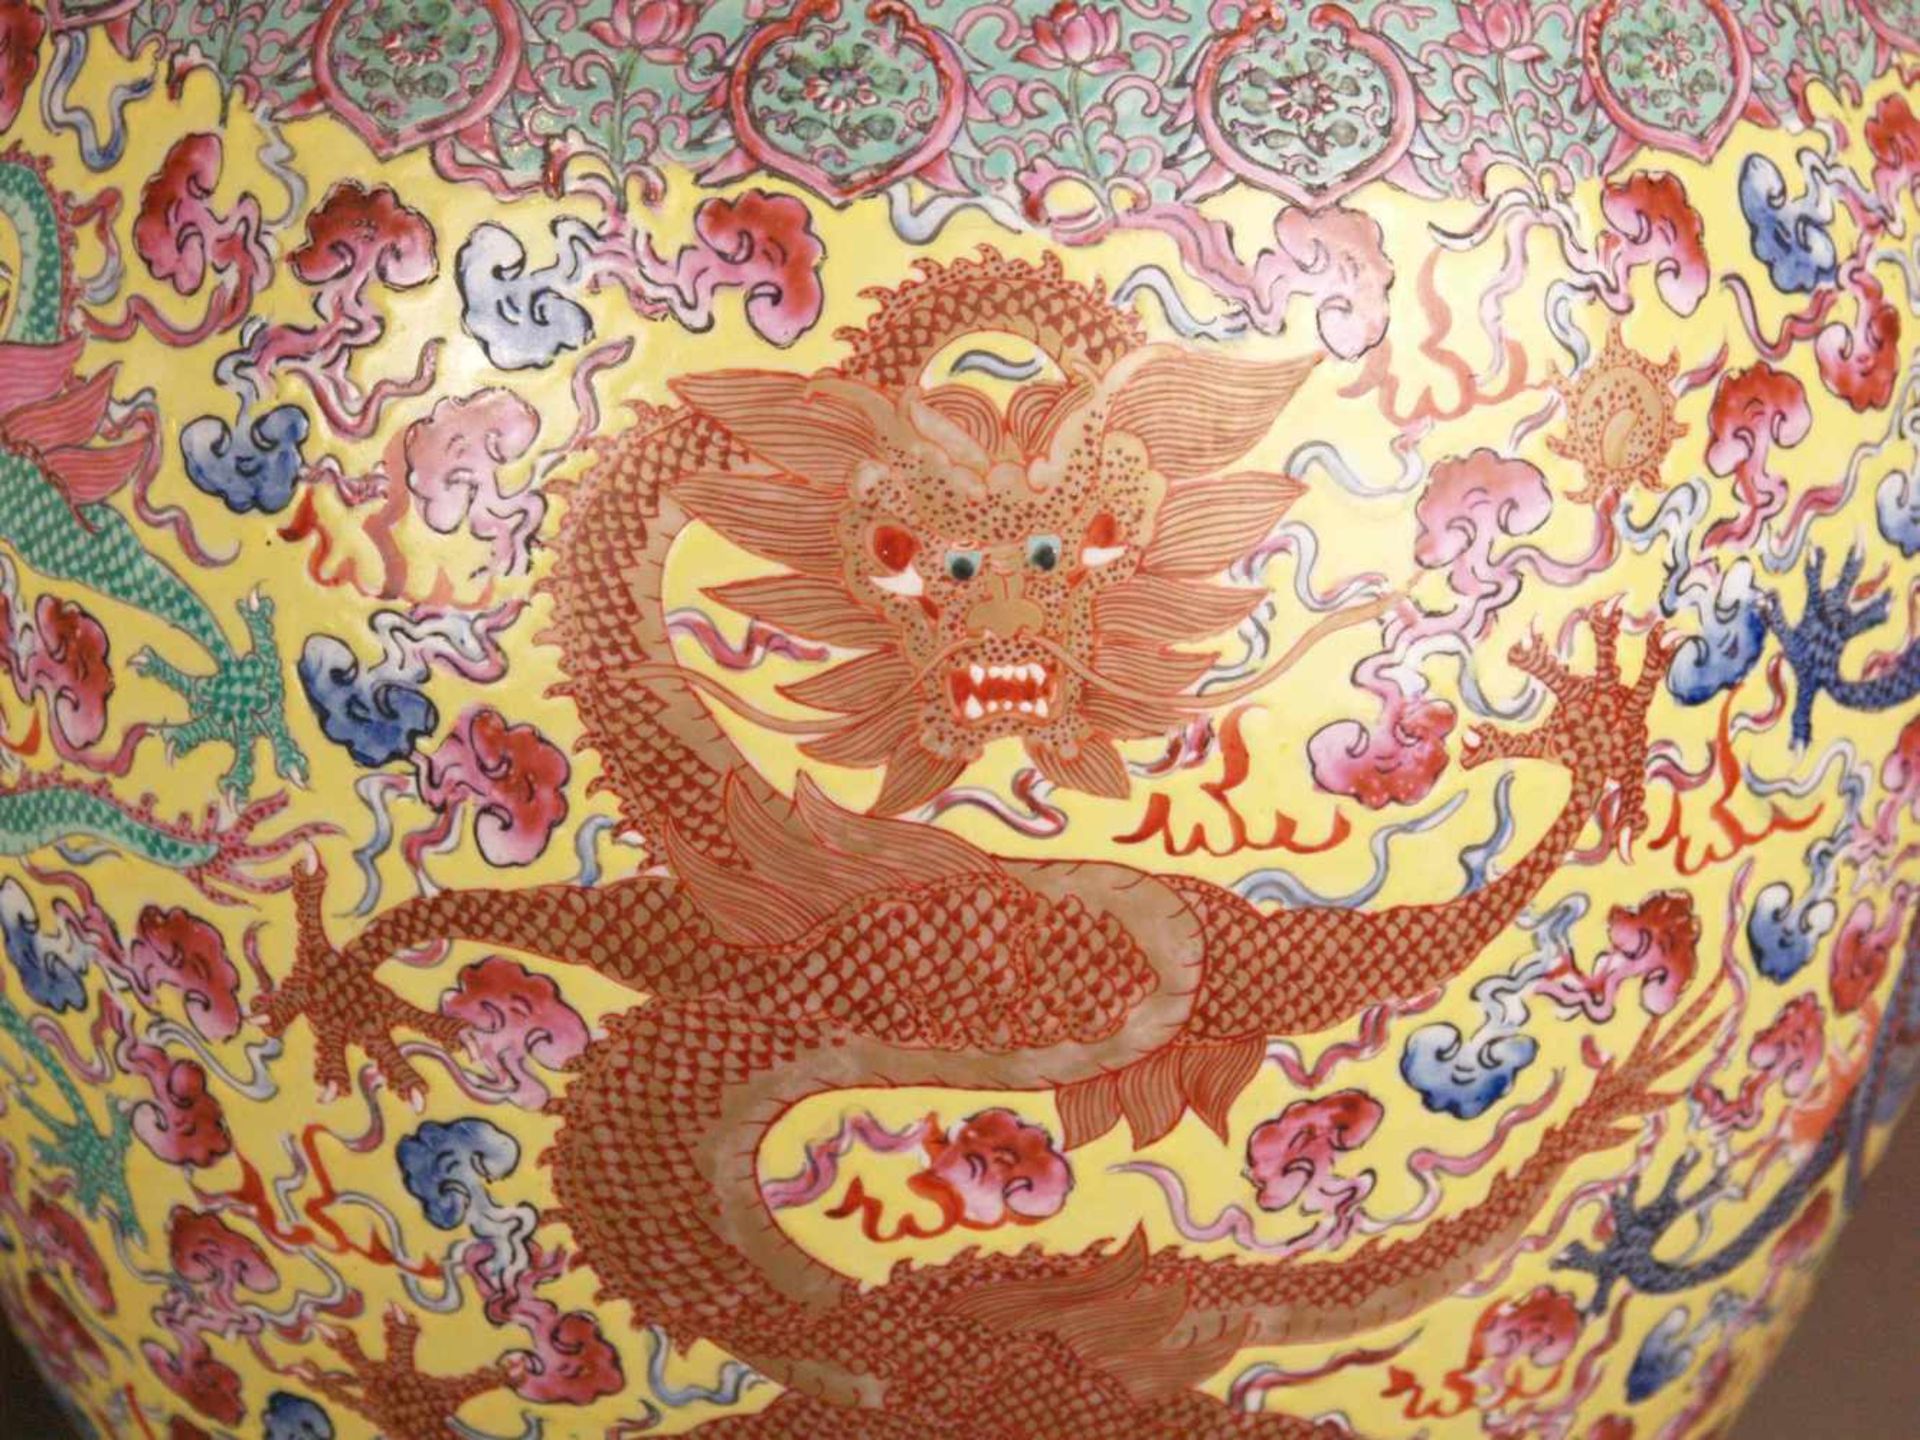 Paar Bodenvasen - China 20.Jh.,Tian qiu ping-Typus, üppiger Dekor in polychromen Emailfarben, auf - Bild 11 aus 15